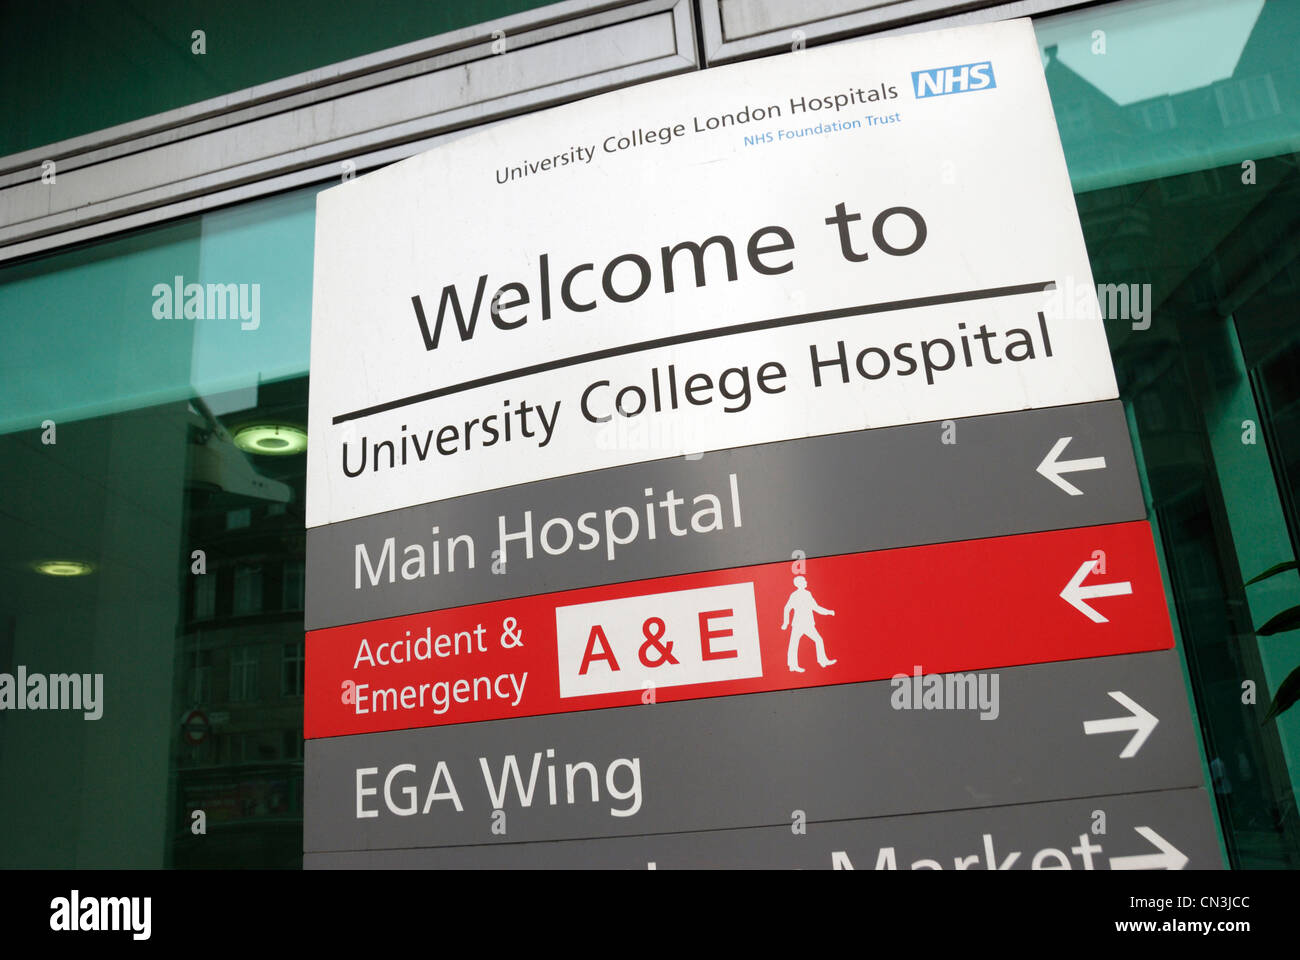 University College Hospital ' Bienvenue ' inscrivez-vous donnant des directives, London, UK Banque D'Images